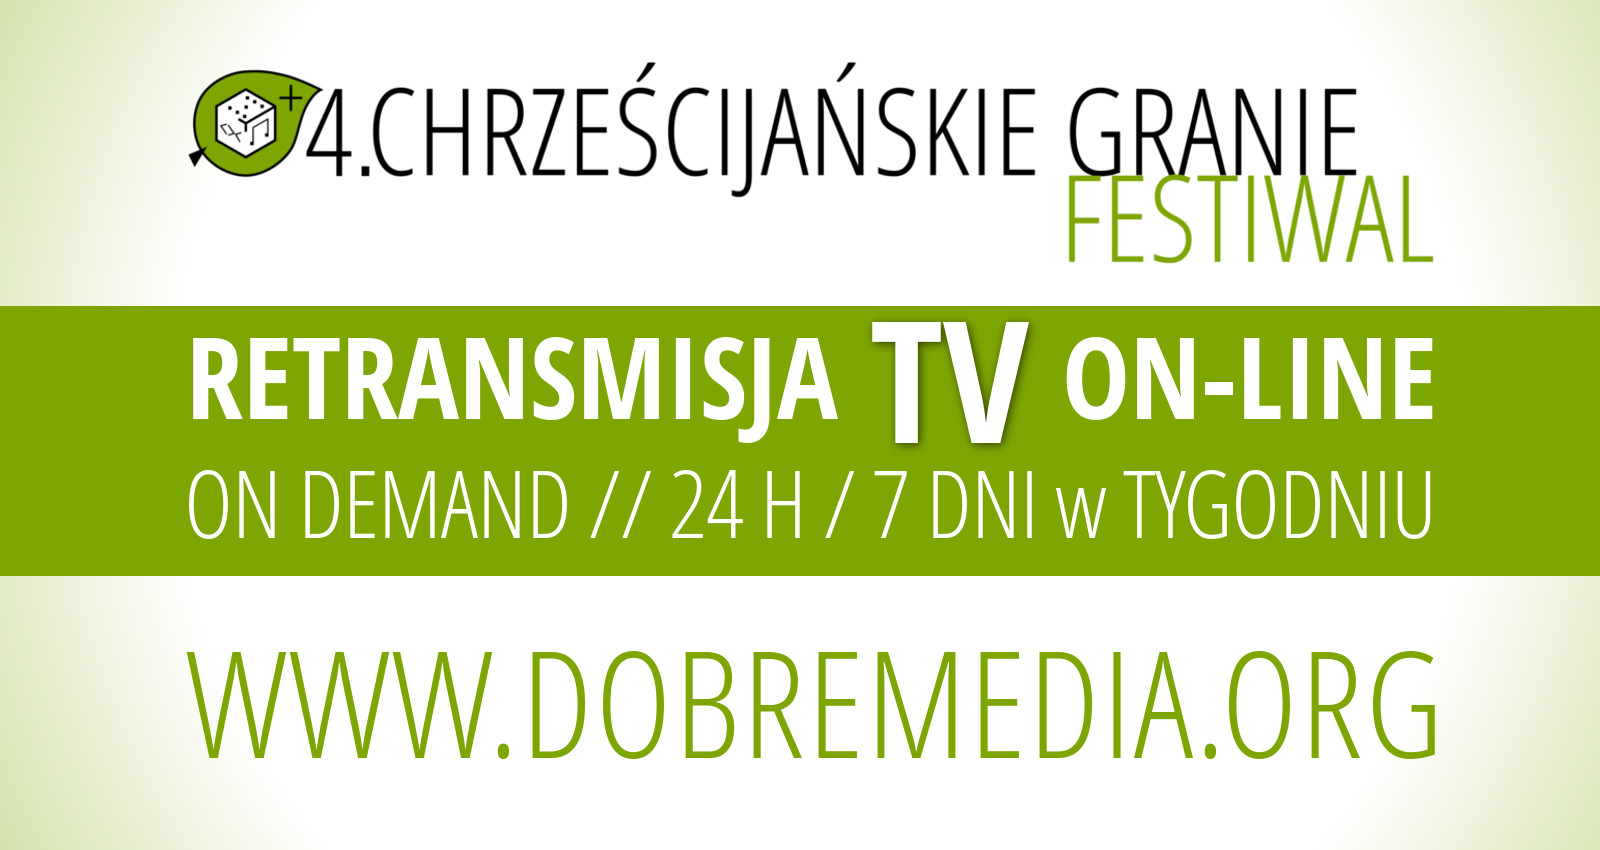 Festiwal Chrześcijańskie Granie - on demand video online